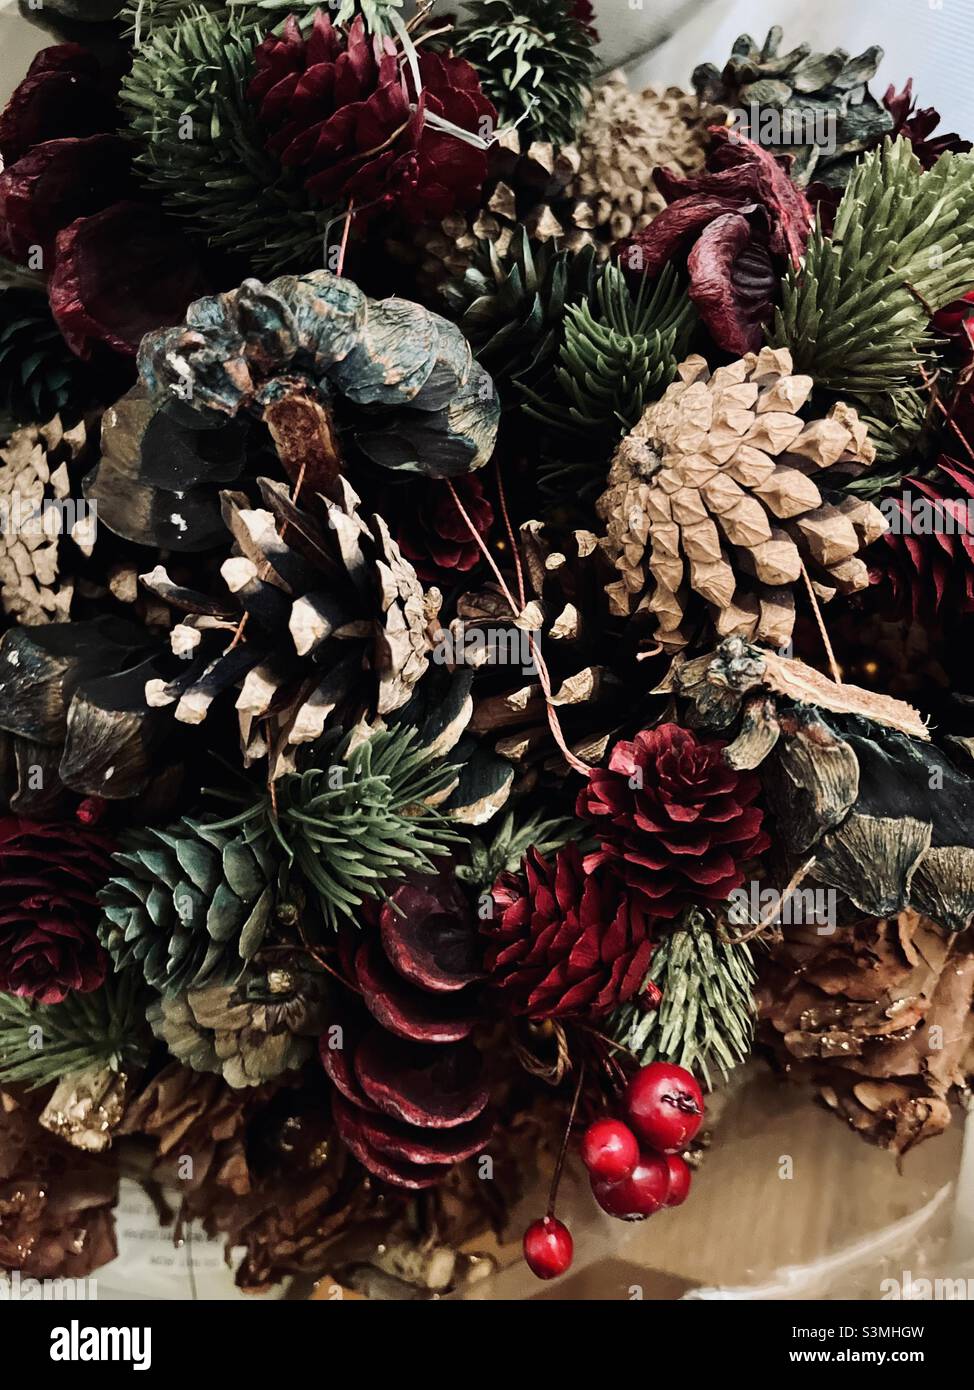 Décoration de Noël pâtisserie - artisanat avec des ressources naturelles telles que les baies séchées acorns pinecones brindilles et feuilles Banque D'Images